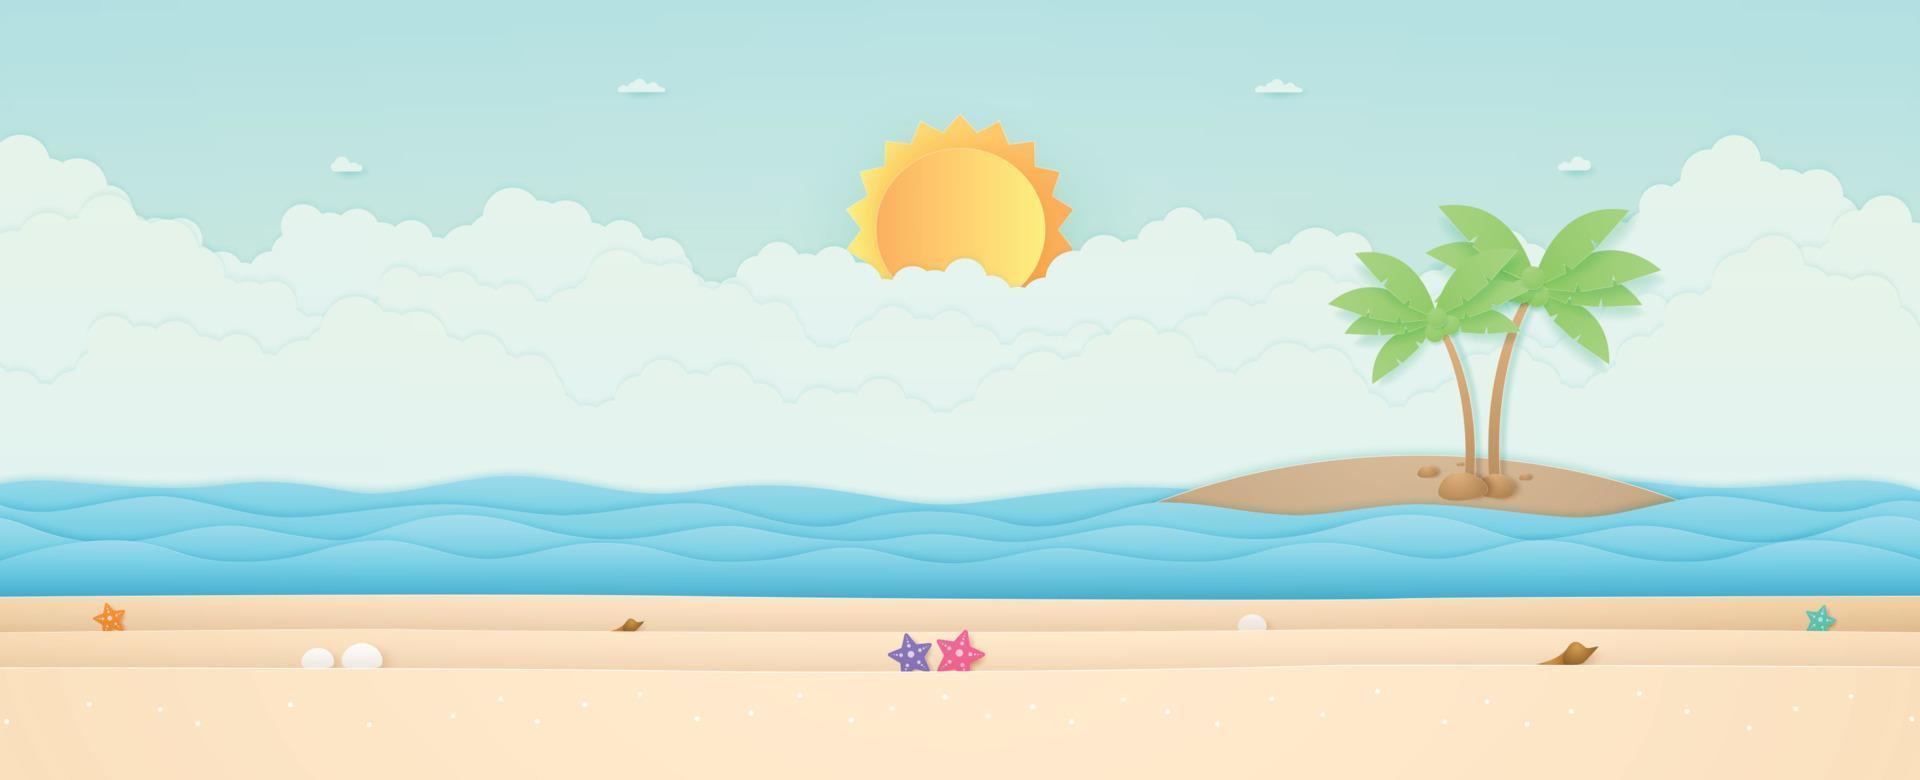 heure d'été, paysage marin, paysage, étoile de mer sur la plage avec mer et île, soleil éclatant dans le ciel, style art papier vecteur